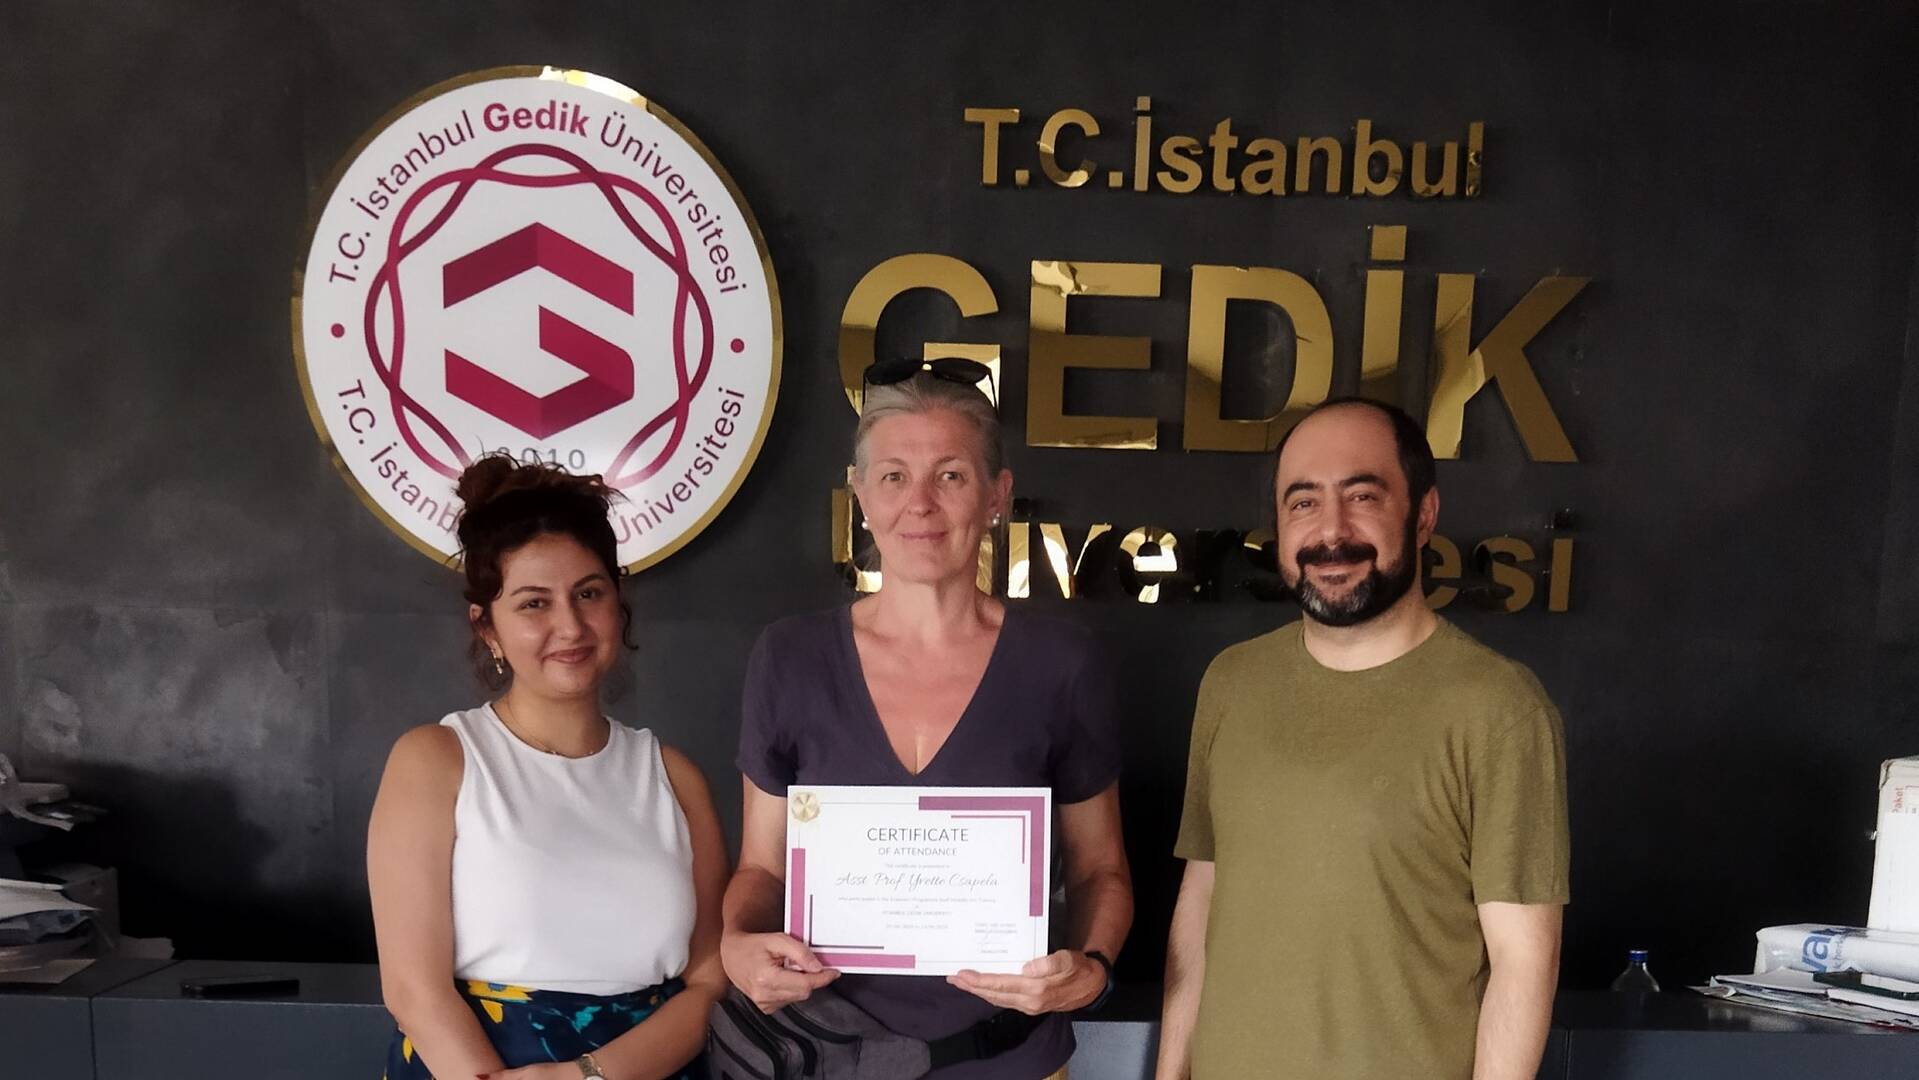 Látogatás partnerintézményünknél, az Isztambuli Gedik Egyetemen